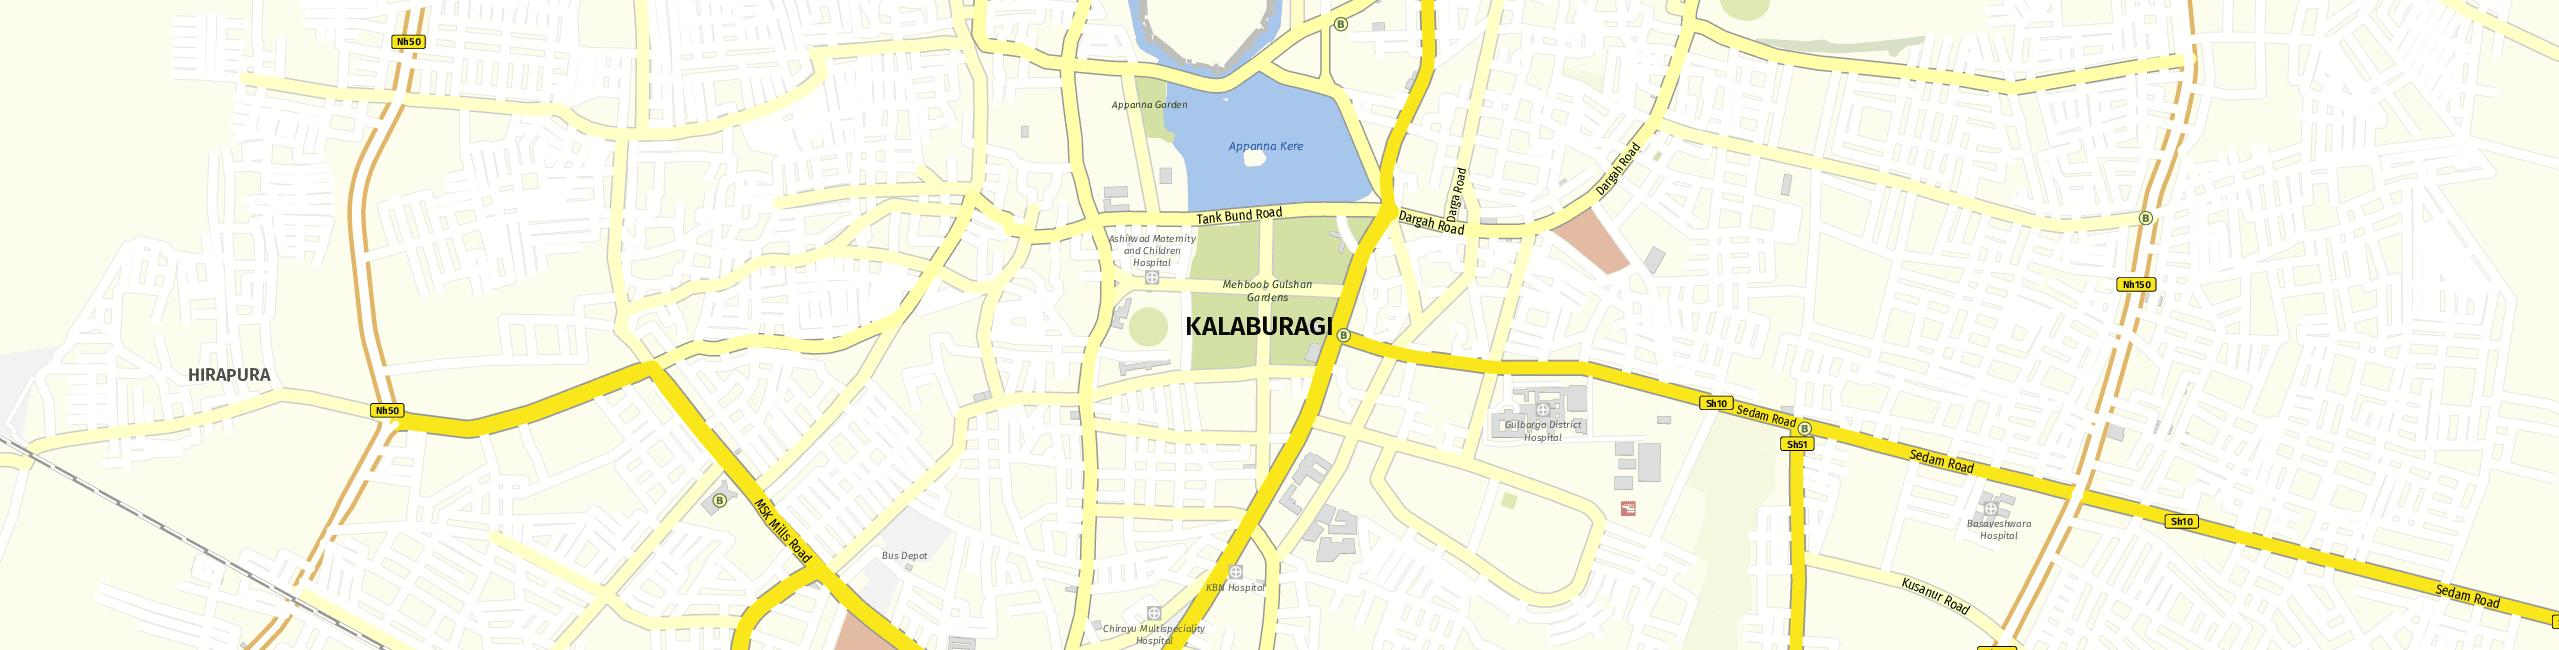 Stadtplan Kalaburagi zum Downloaden.